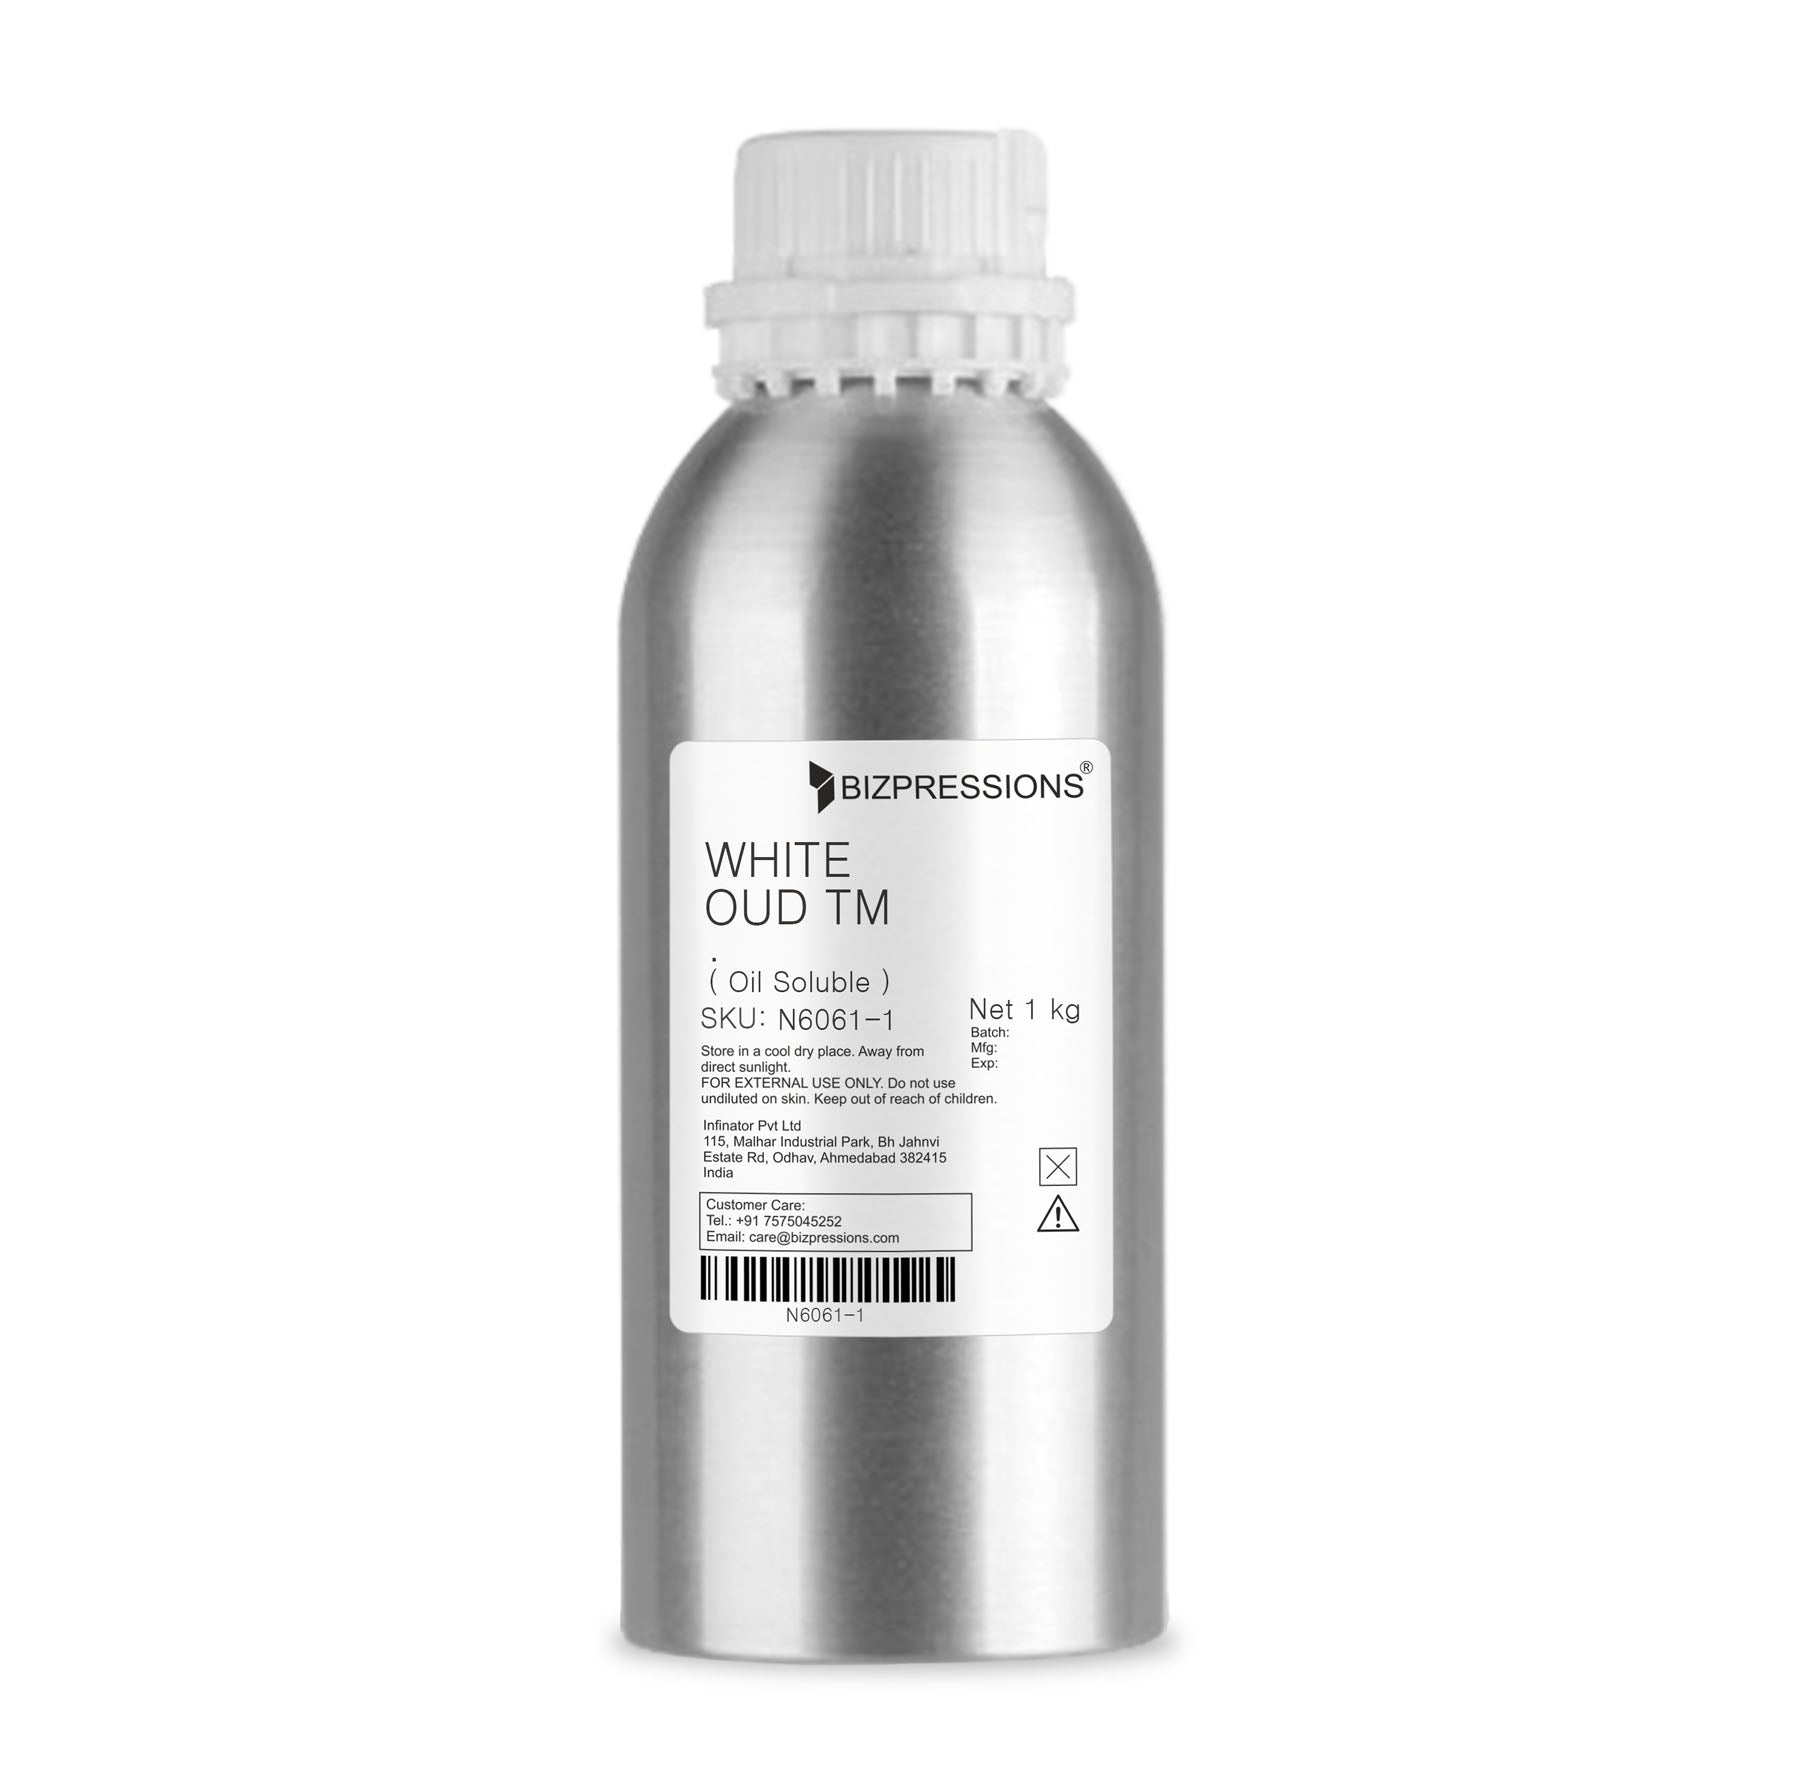 WHITE OUD TM - Fragrance ( Oil Soluble ) - 1 kg